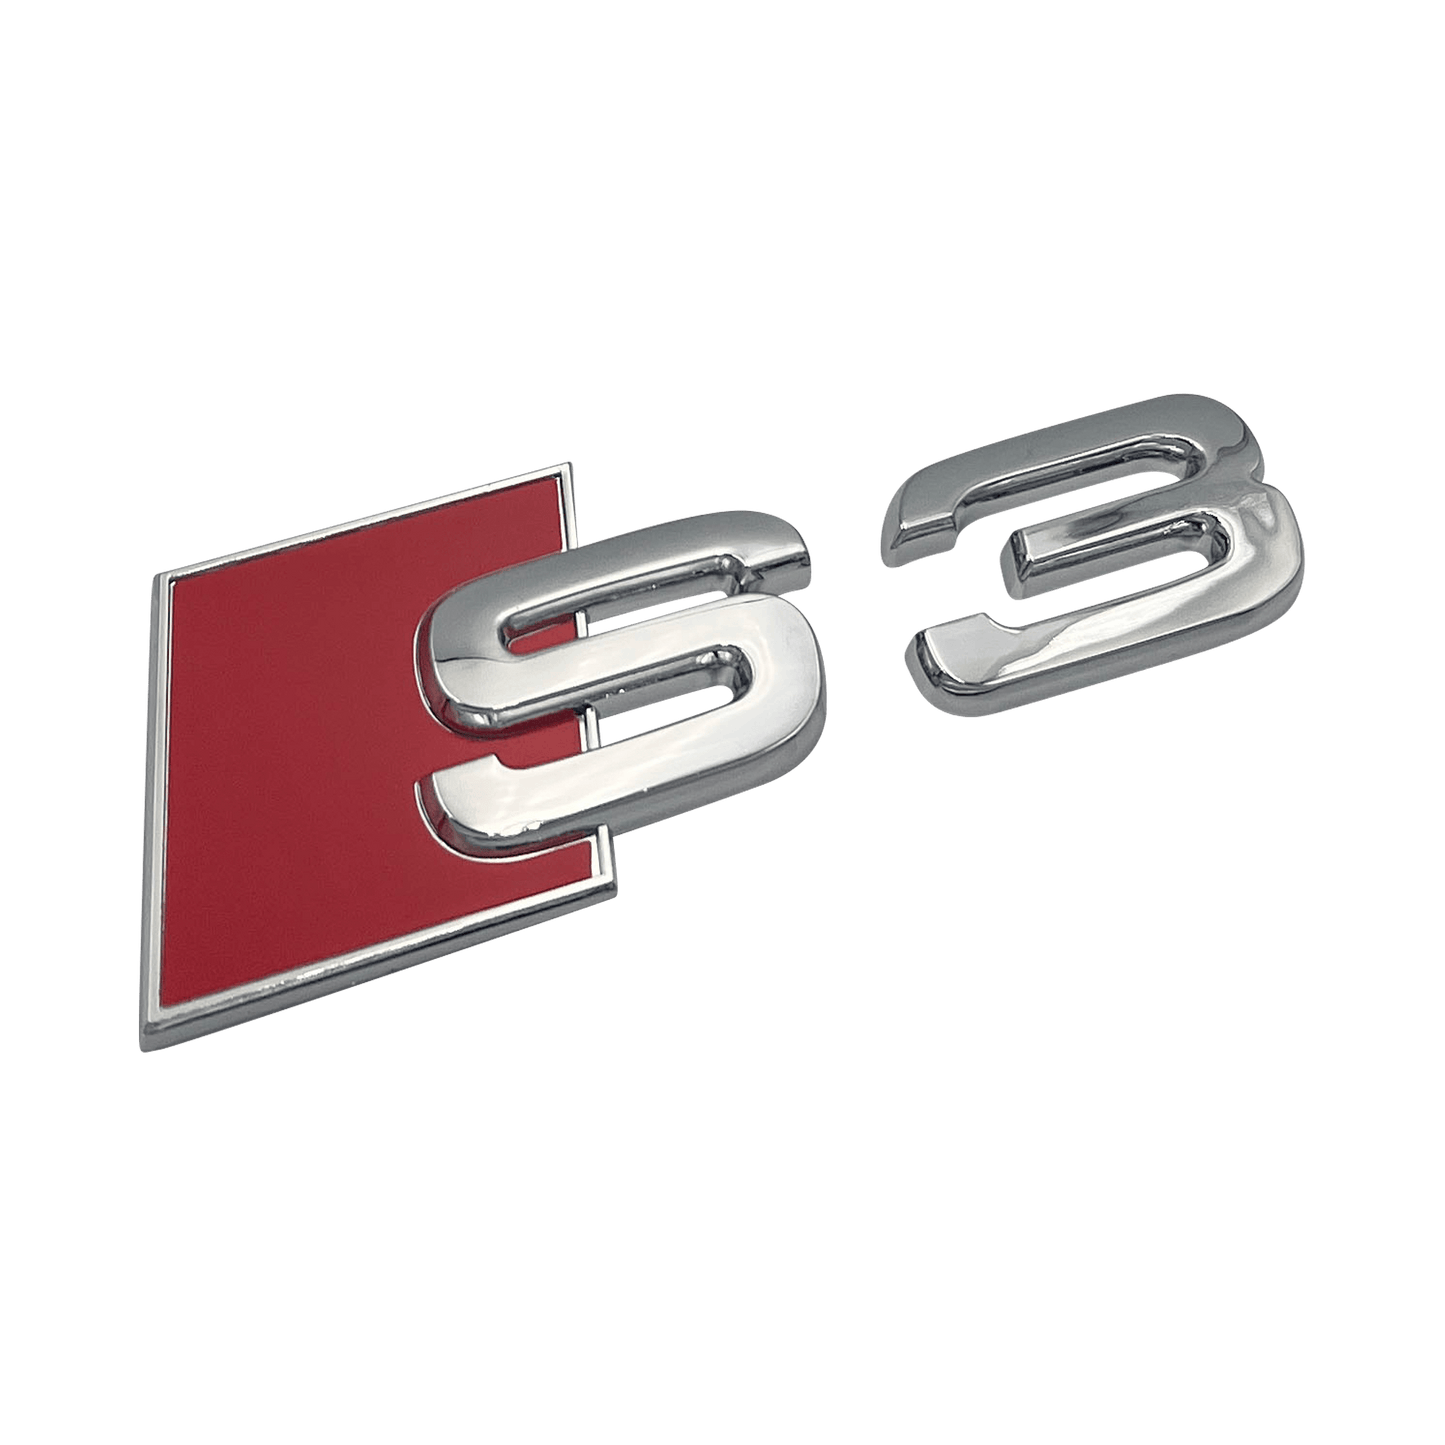 Chrome Audi S3 Rear Emblem Badge 